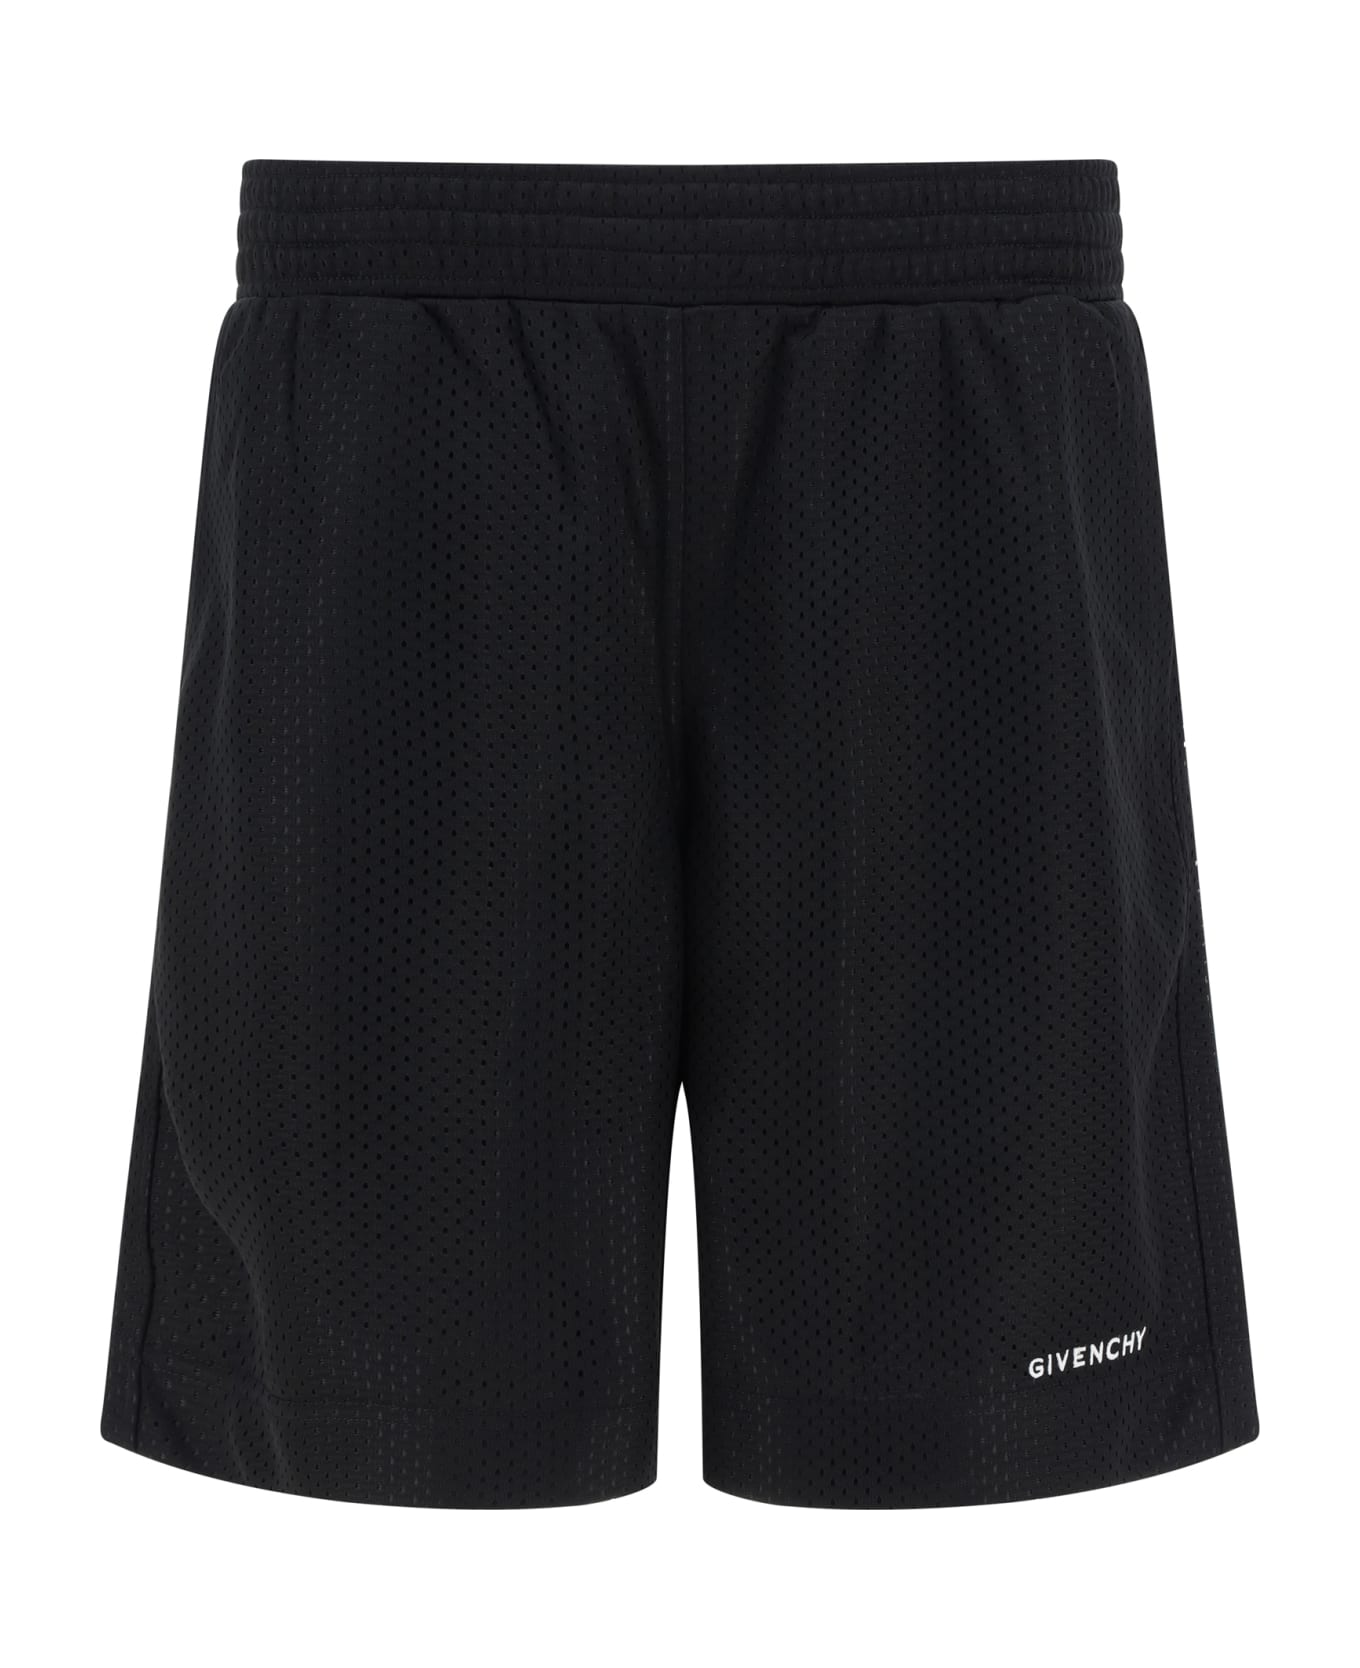 Givenchy Bermuda Shorts - Black ショートパンツ